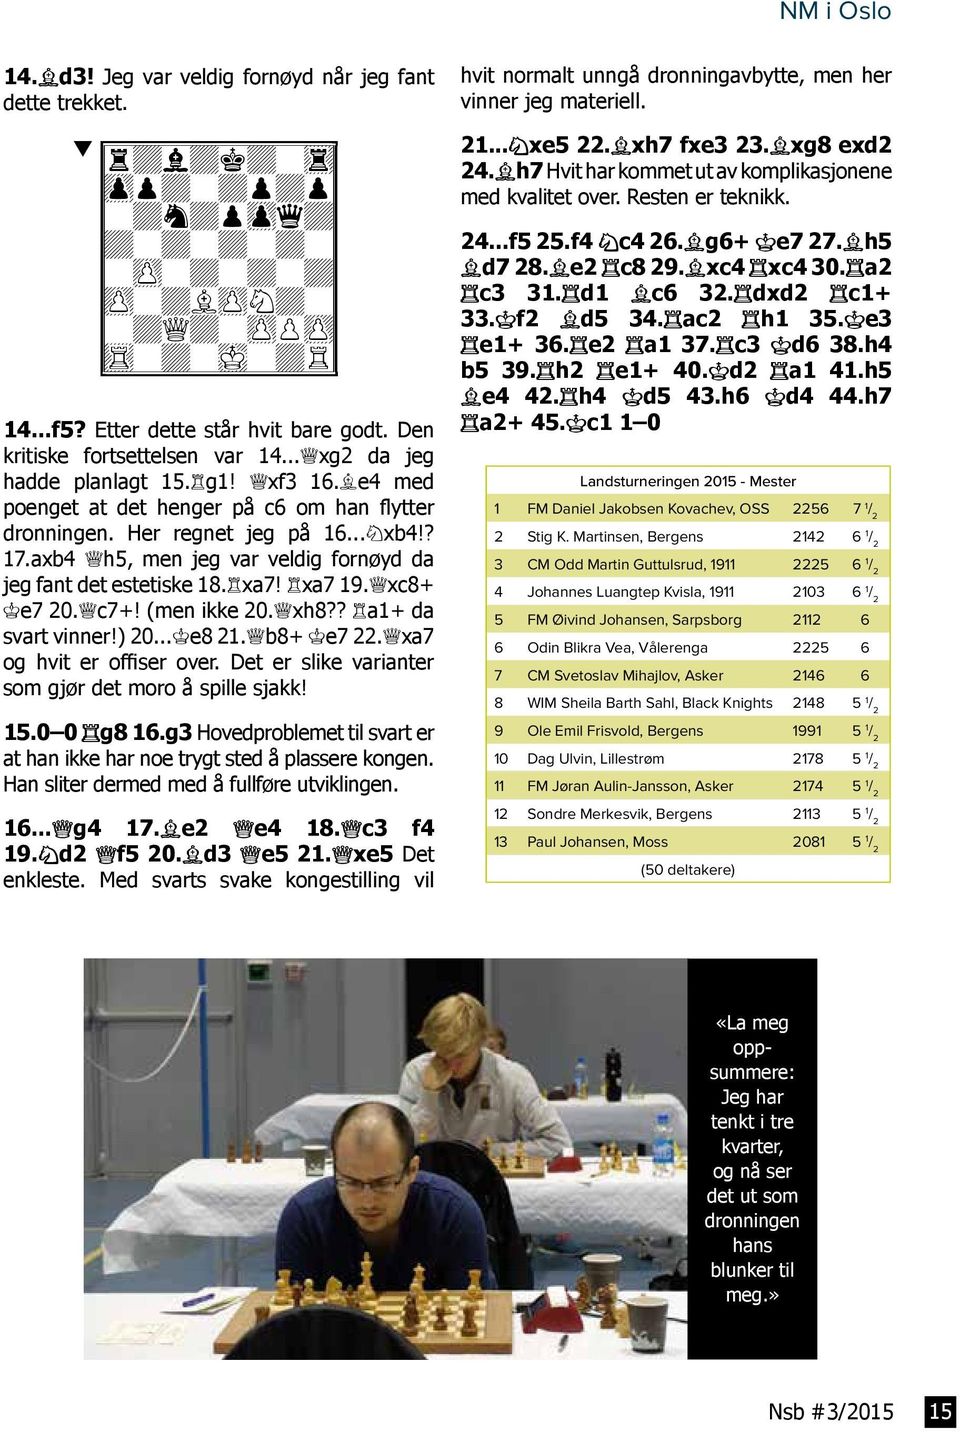 ..Sxb4!? 17.axb4 Dh5, men jeg var veldig fornøyd da jeg fant det estetiske 18.Txa7! Txa7 19.Dxc8+ Ke7 20.Dc7+! (men ikke 20.Dxh8?? Ta1+ da svart vinner!) 20...Ke8 21.Db8+ Ke7 22.